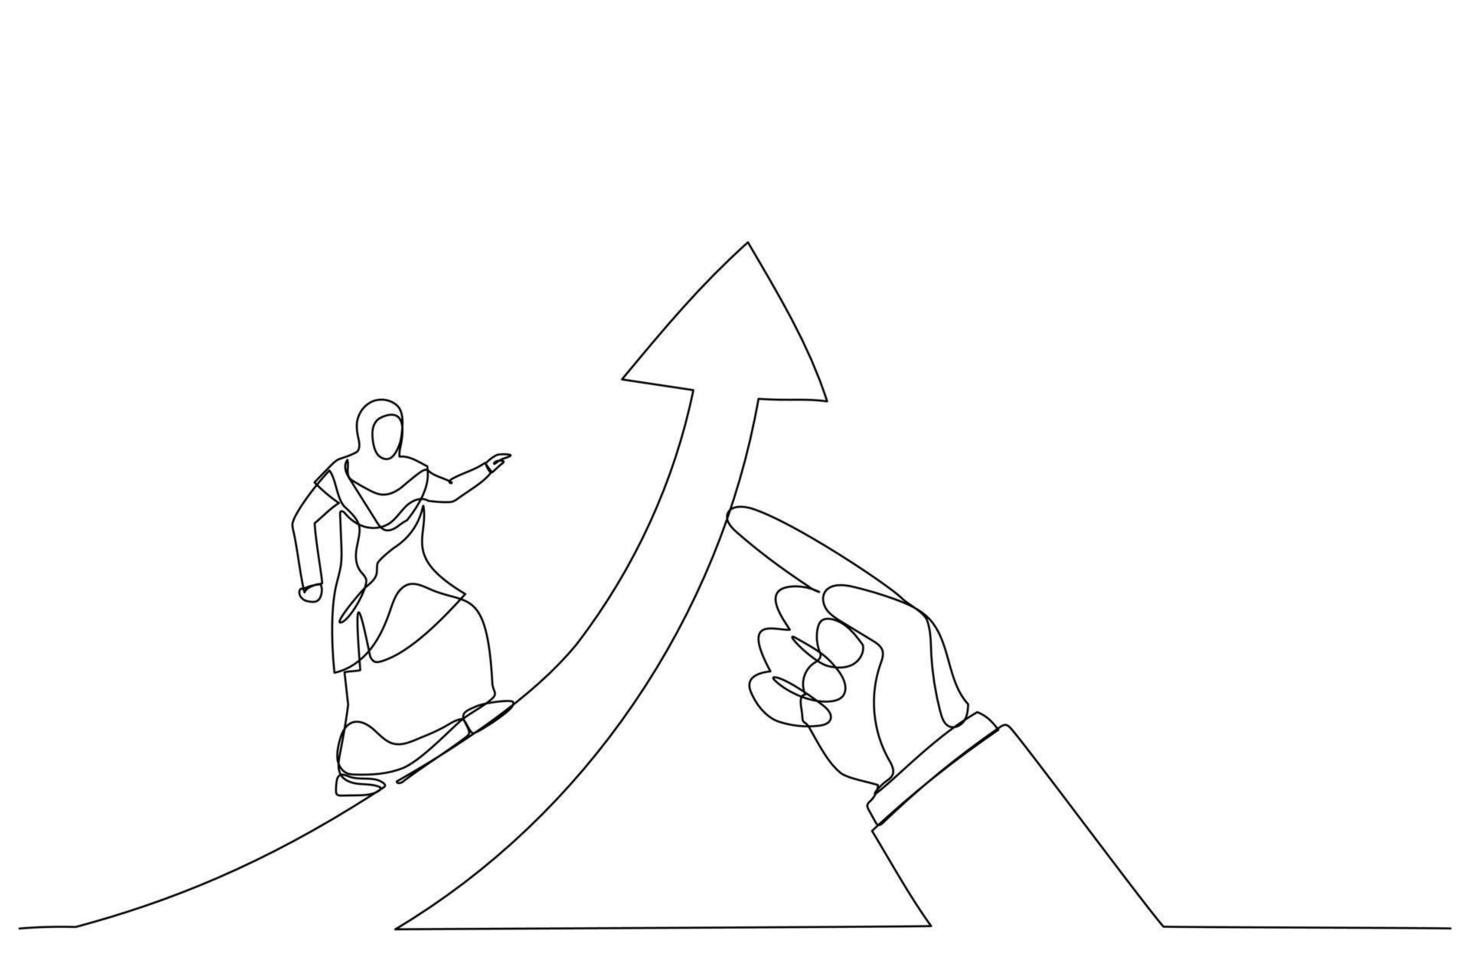 illustration d'une femme musulmane courant sur la flèche du succès soulevée par la main géante du leader. métaphore de la réussite commerciale pour faire avancer le leadership. style d'art en ligne unique vecteur